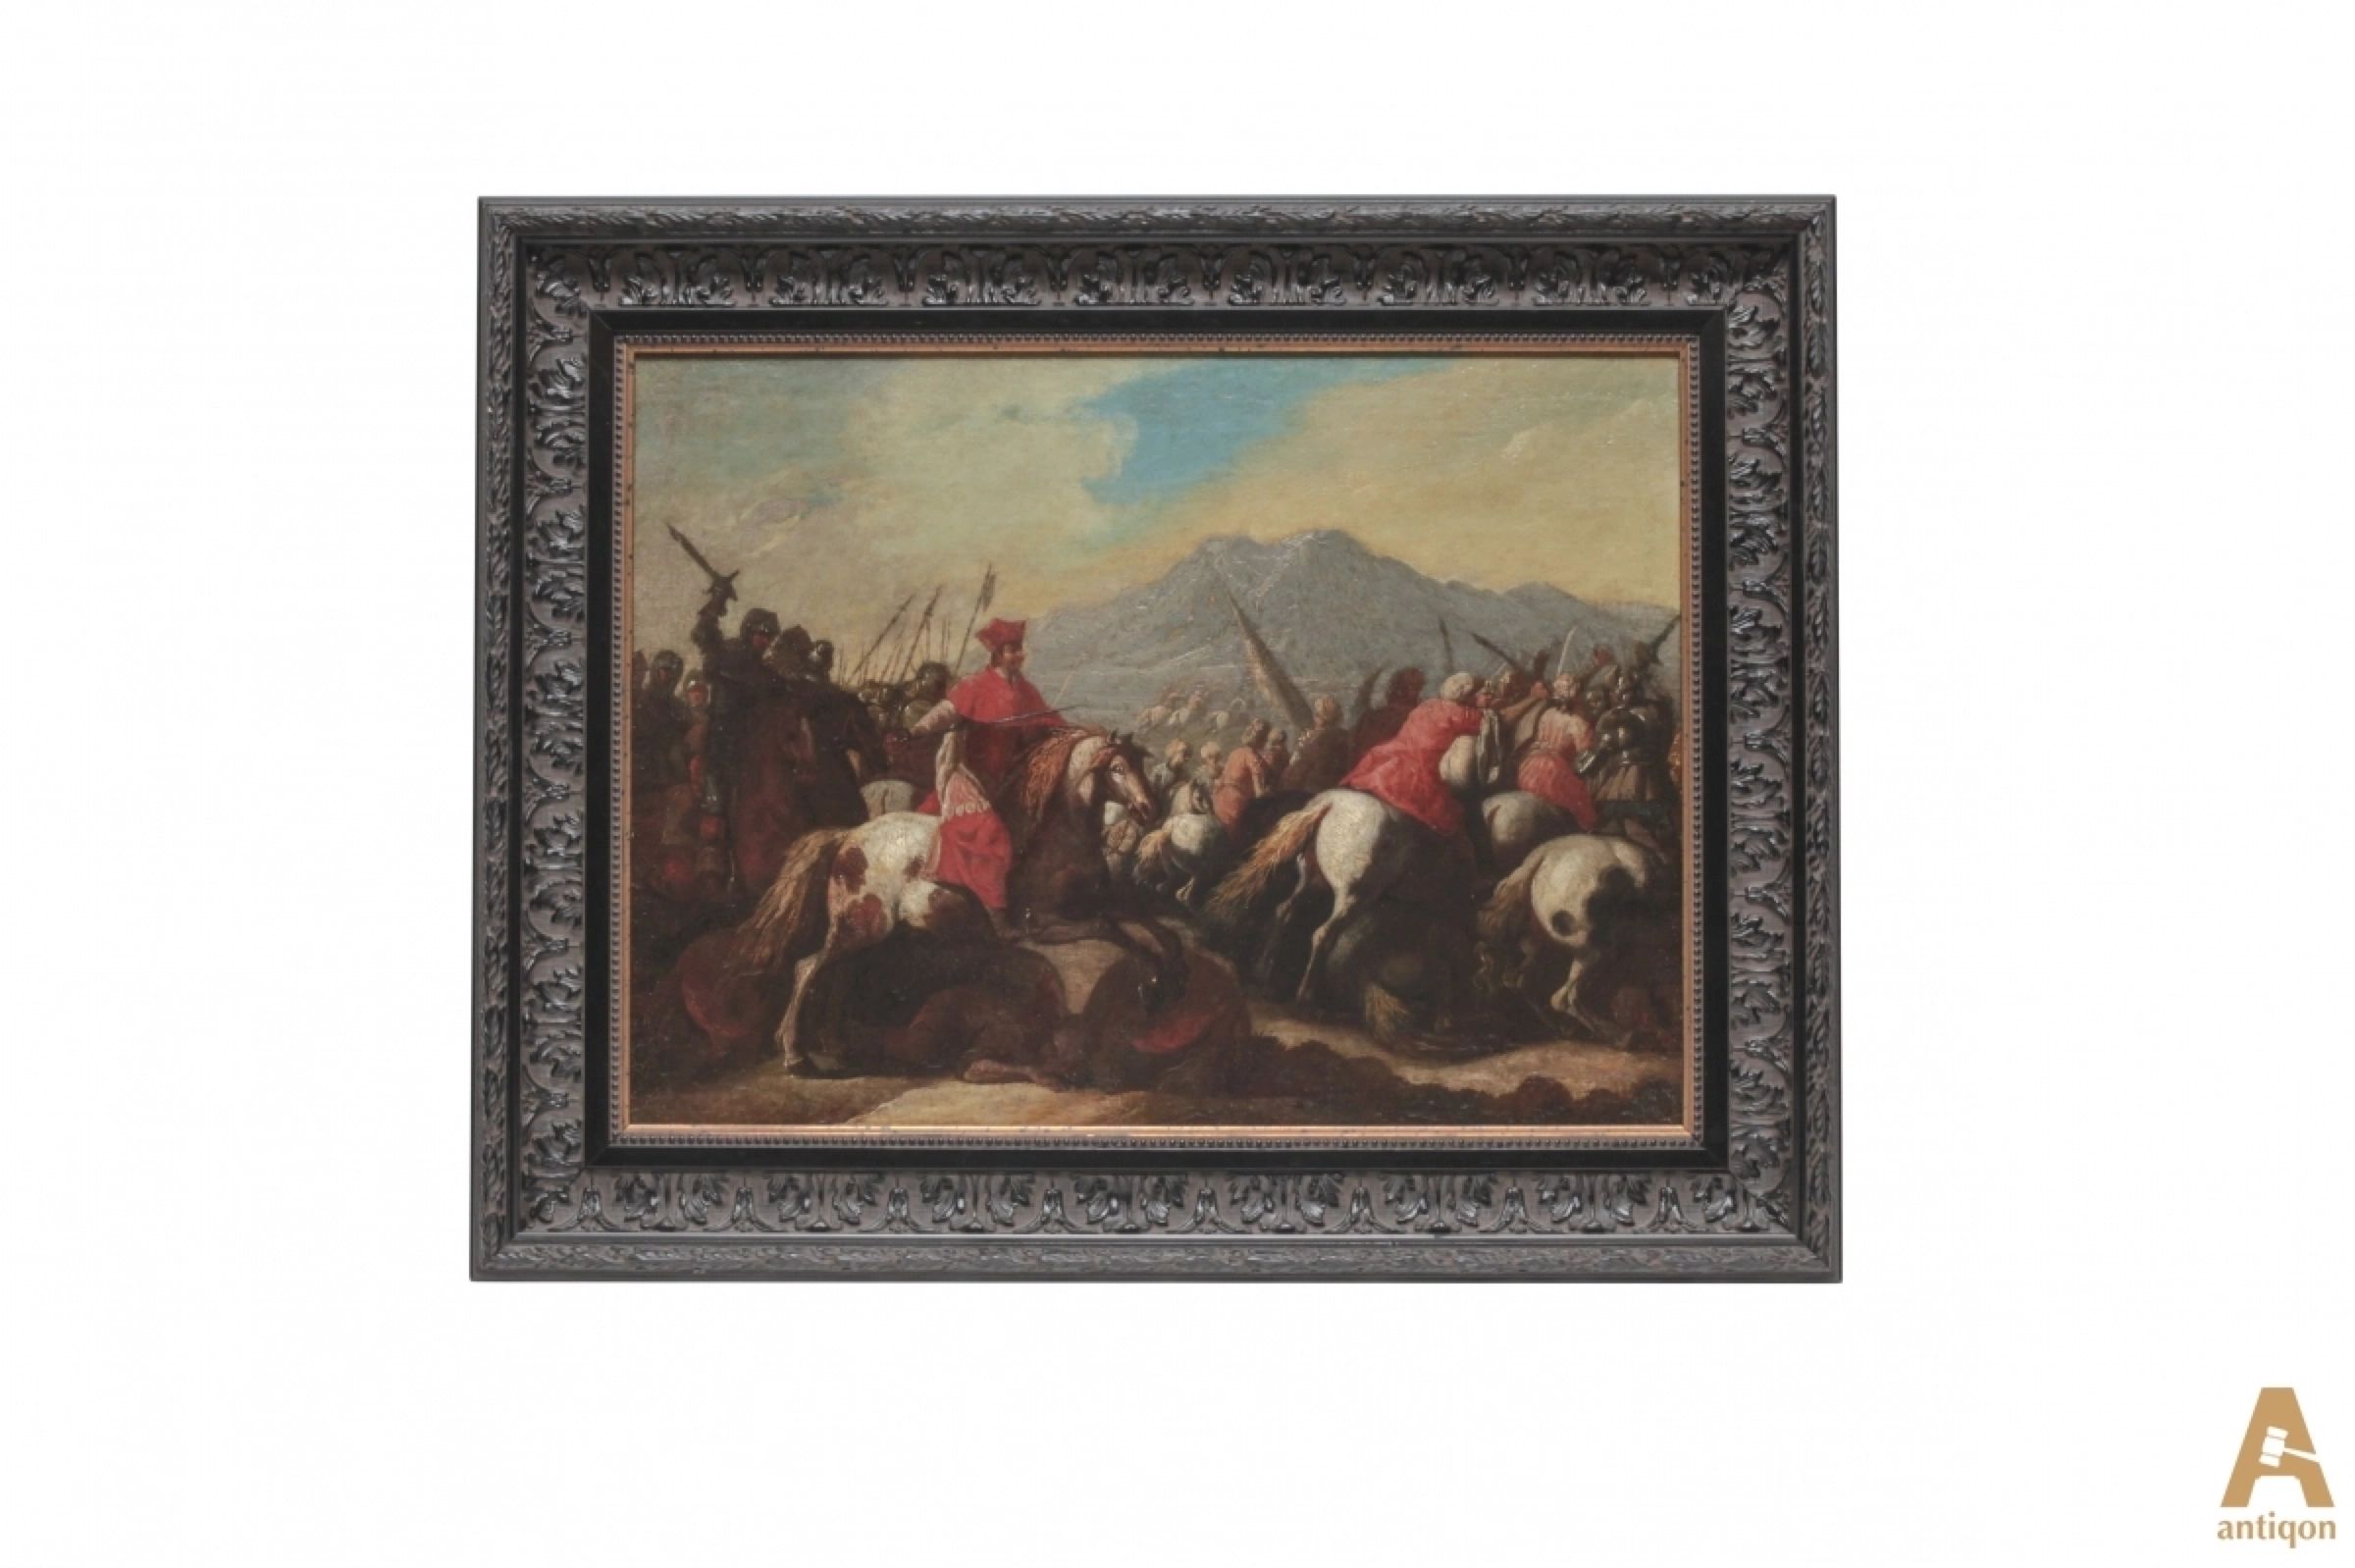 Bataille-des-Croisés-avec-les-Sarrasins-Georg-Philipp-Rugendas-1666-1742-